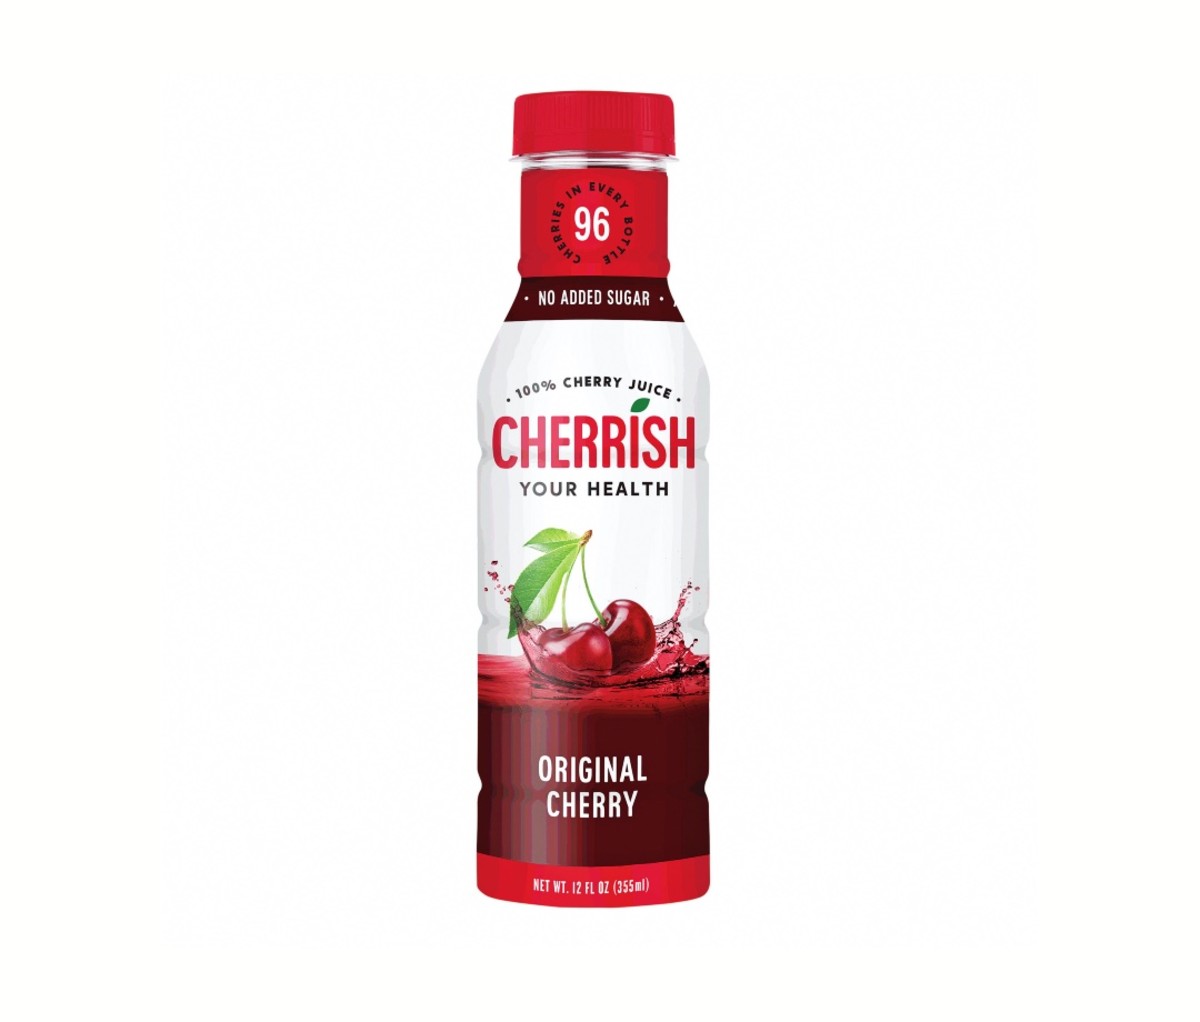 Cherrish Tart Cherry Juice